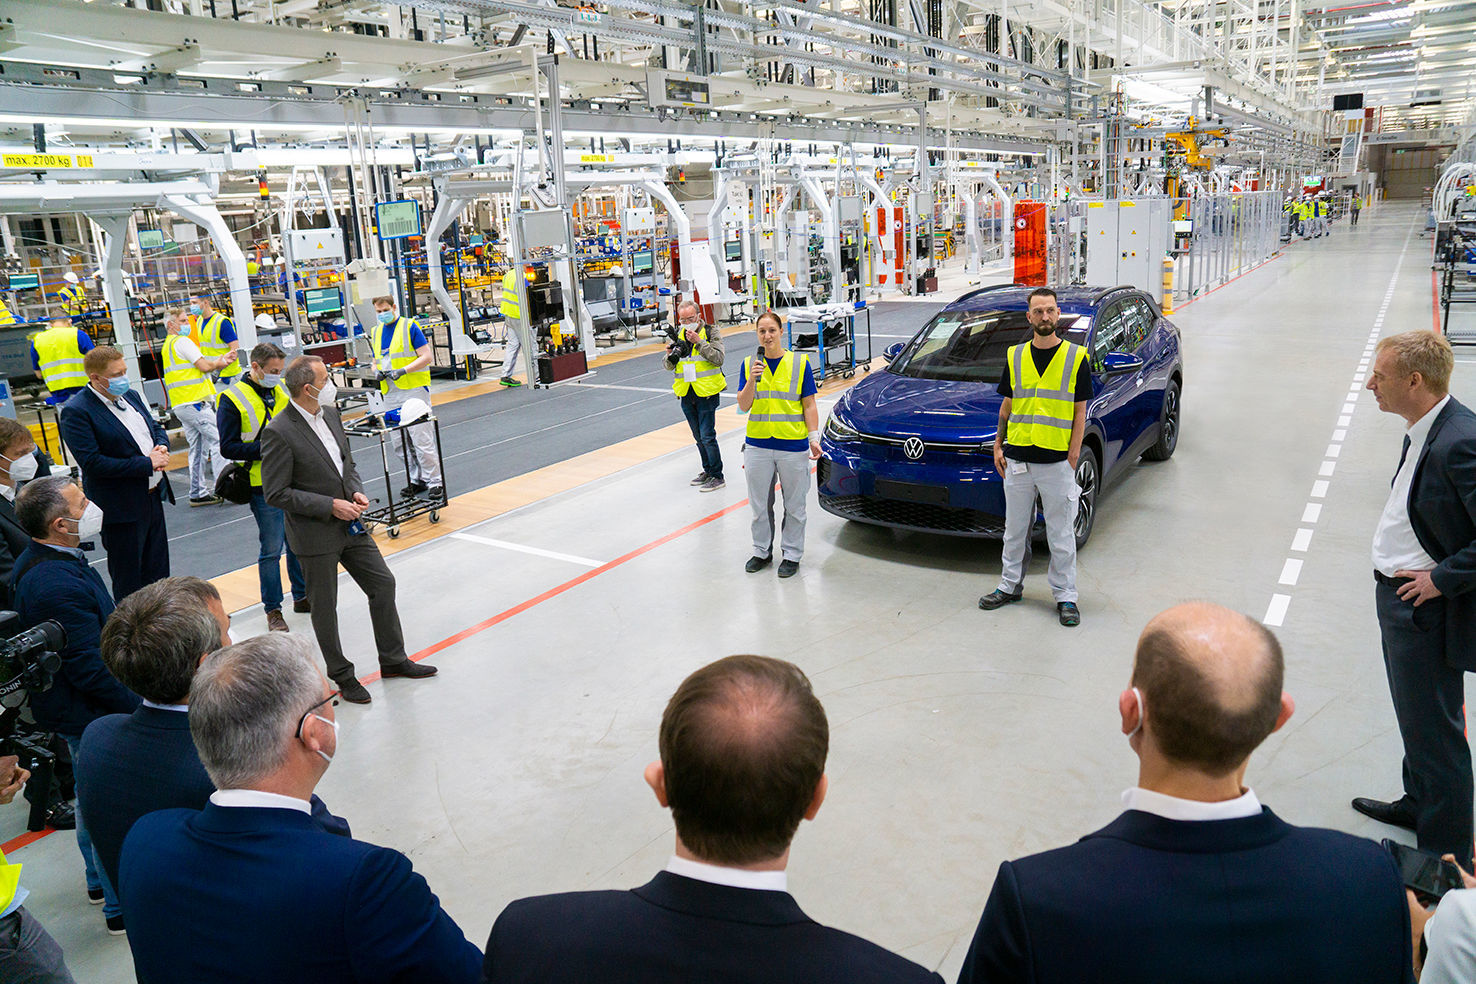 Globales Produktionsnetz für E-Autos wächst: Volkswagen startet in Emden zweite deutsche E-Fertigung